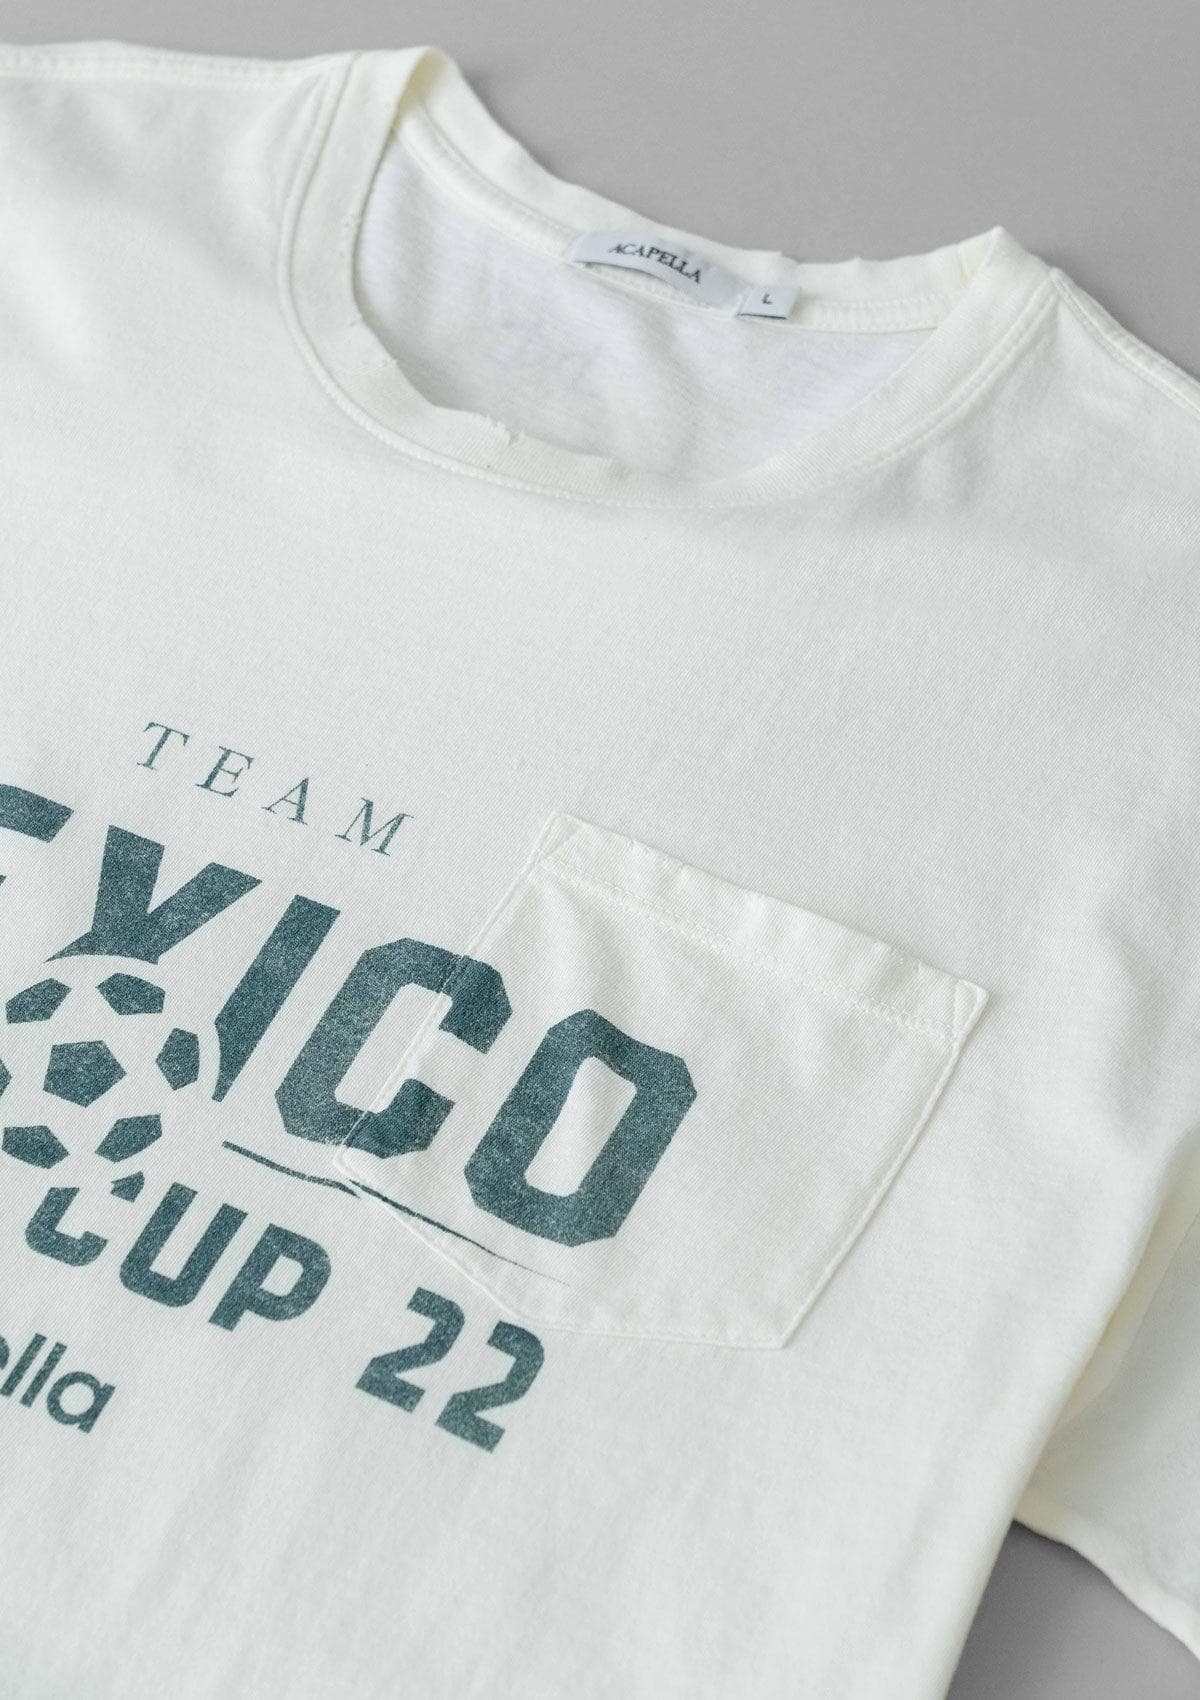 Team Mexico - Vintage White